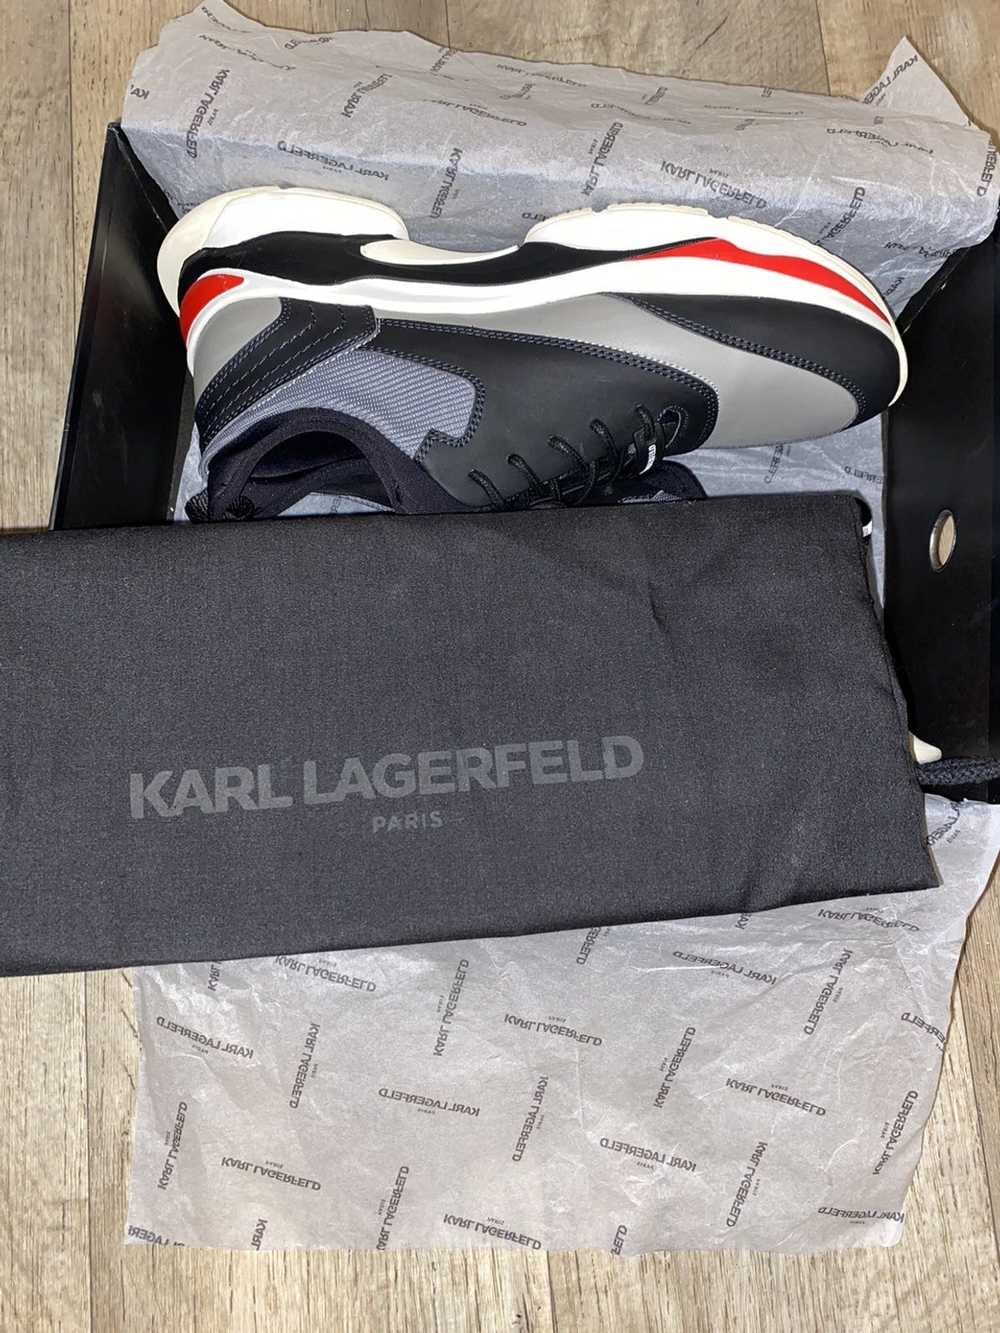 Karl Lagerfeld Karl Lagerfeld Paris sneakers - image 8